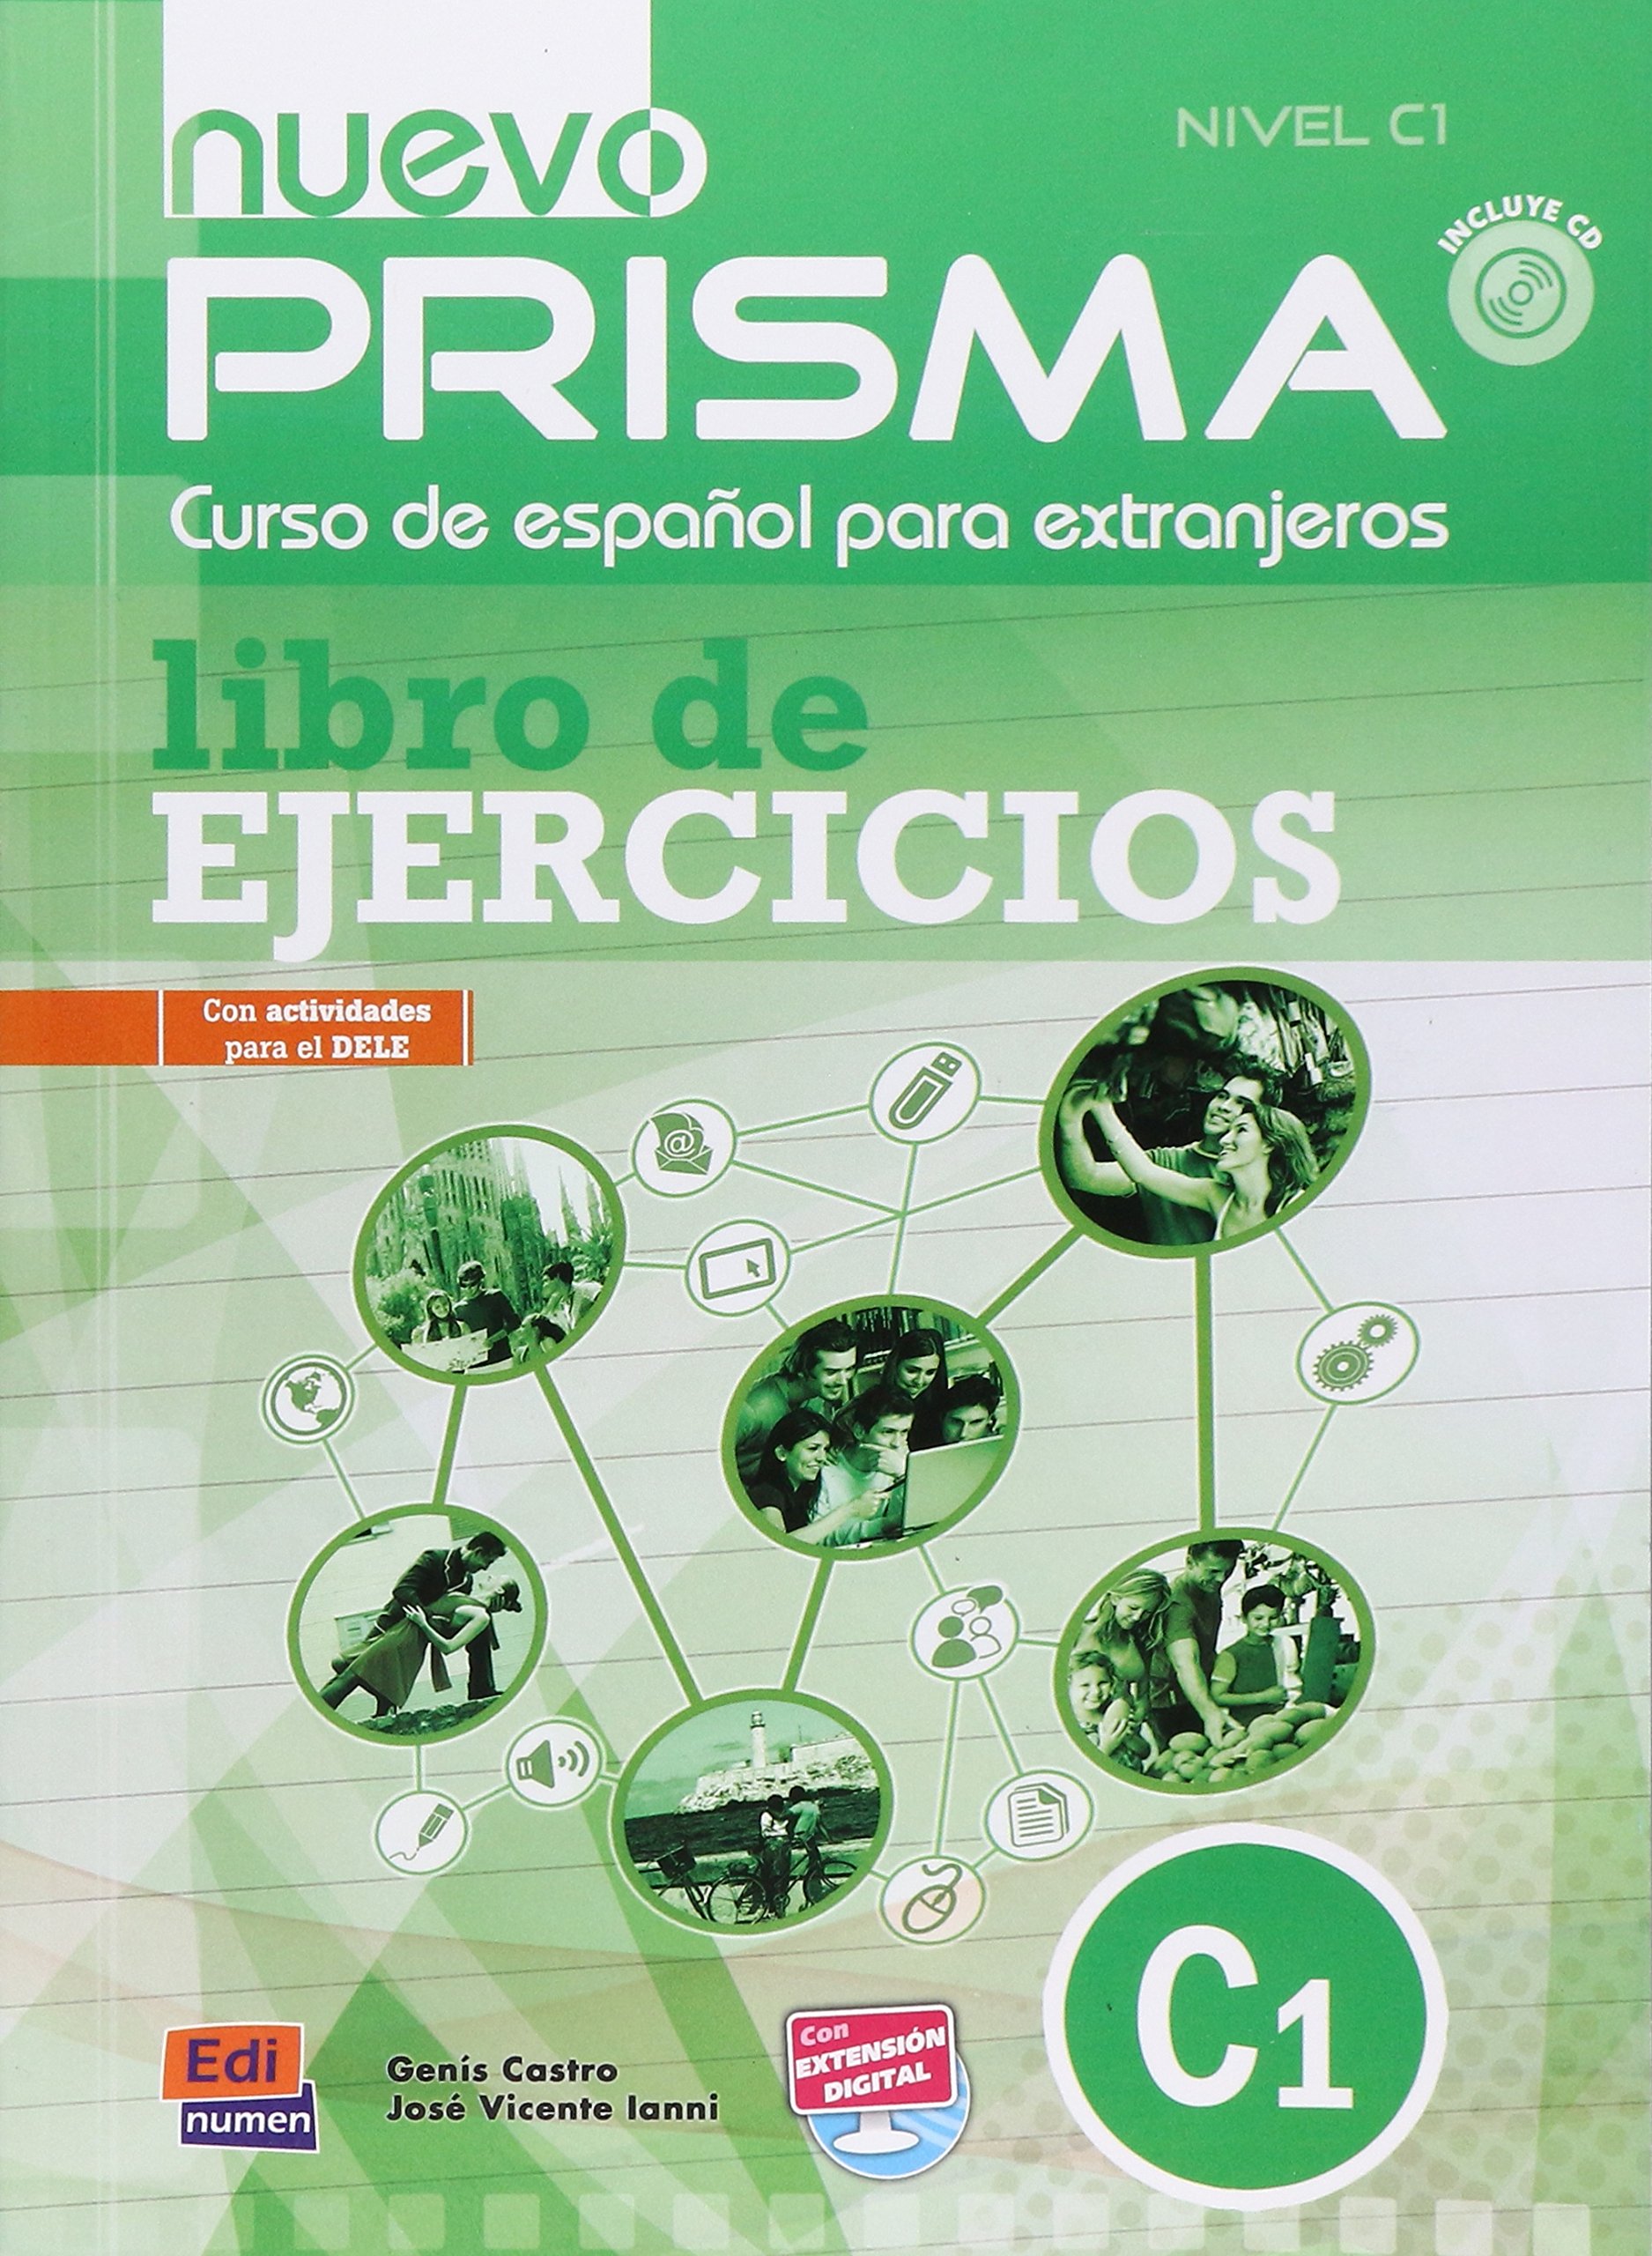 NUEVO PRISMA C1 Libro De Ejercicios + Extensión digital